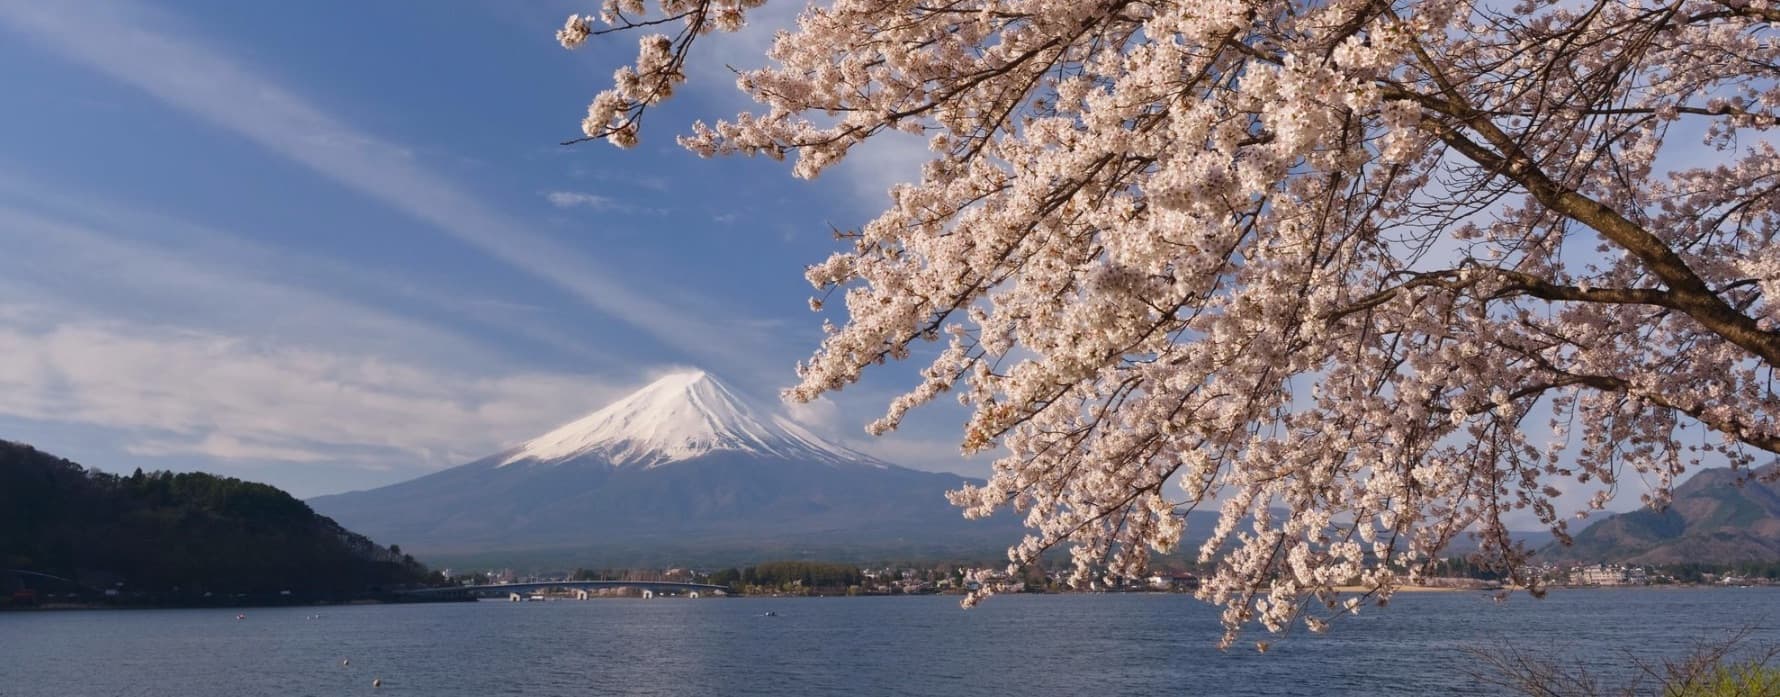 富士山 富士五湖